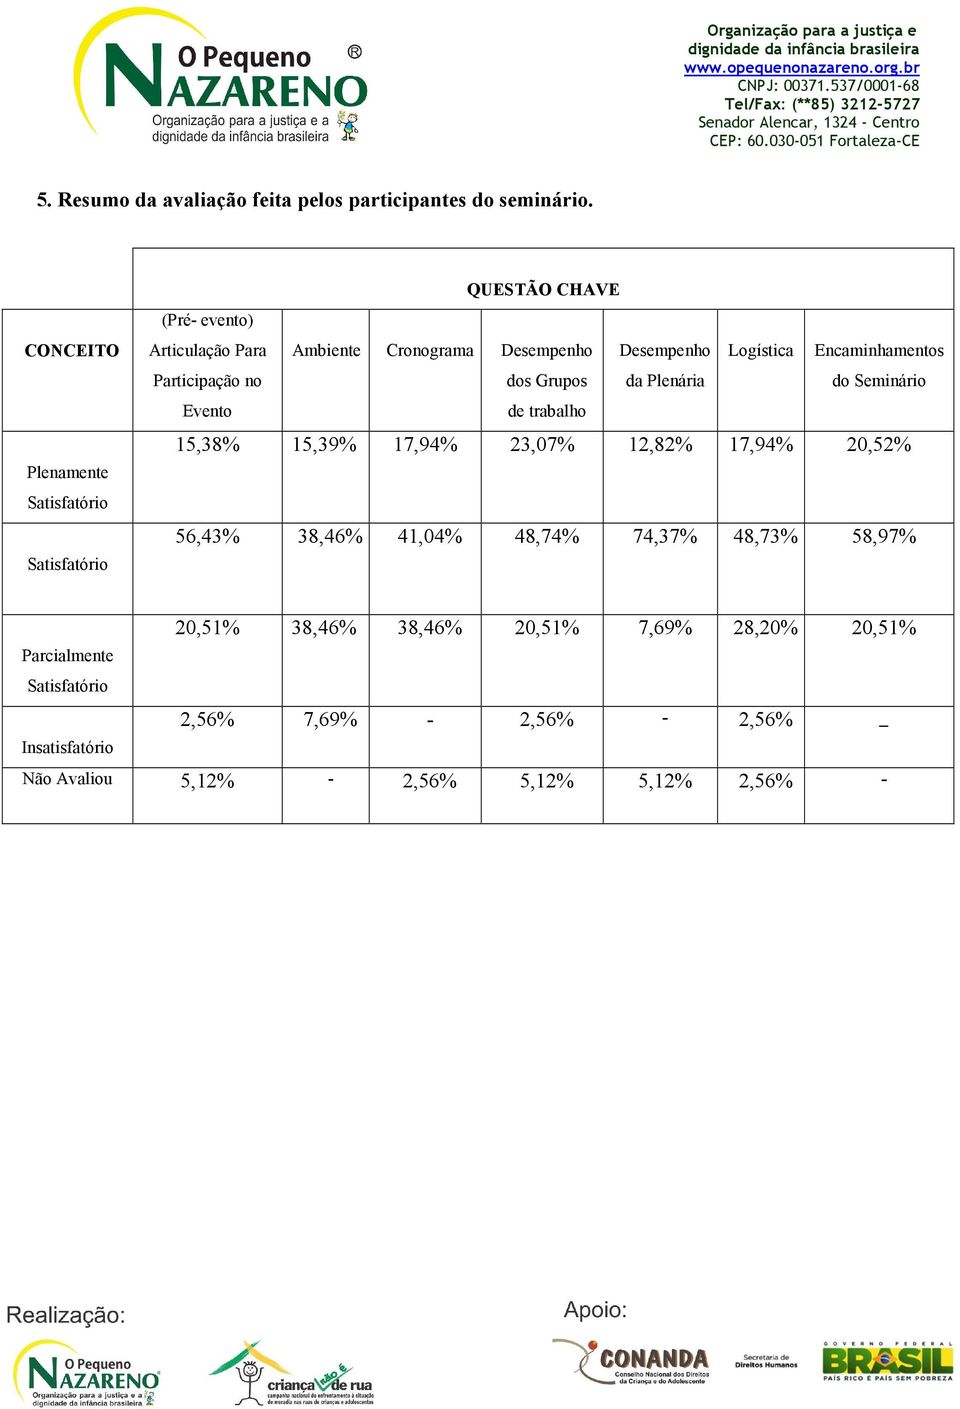 Logística Encaminhamentos Participação no dos Grupos da Plenária do Seminário Evento de trabalho 15,38% 15,39% 17,94% 23,07% 12,82% 17,94%